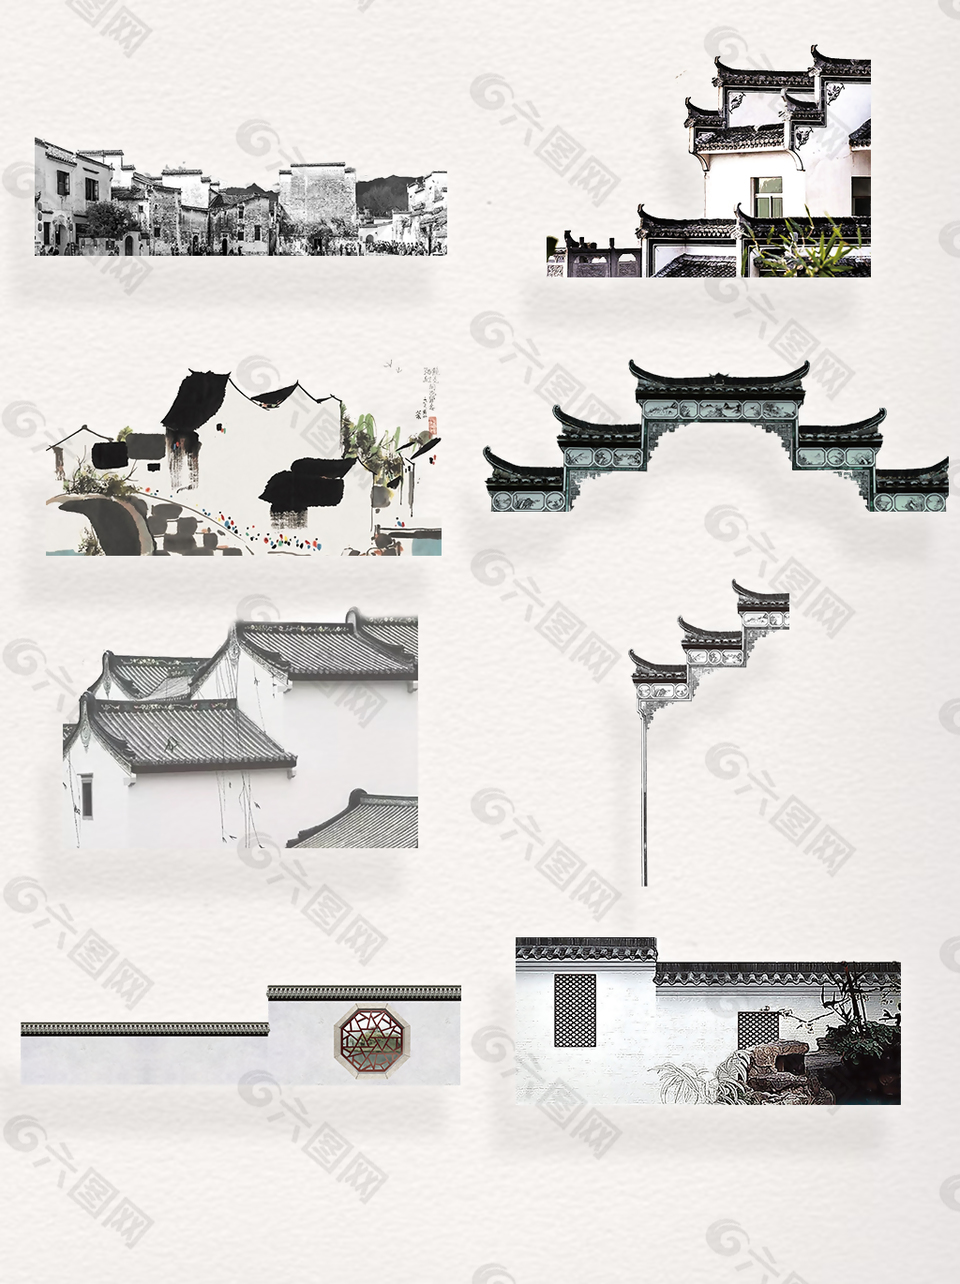 中国江山水乡黑白色徽派建筑装饰图案